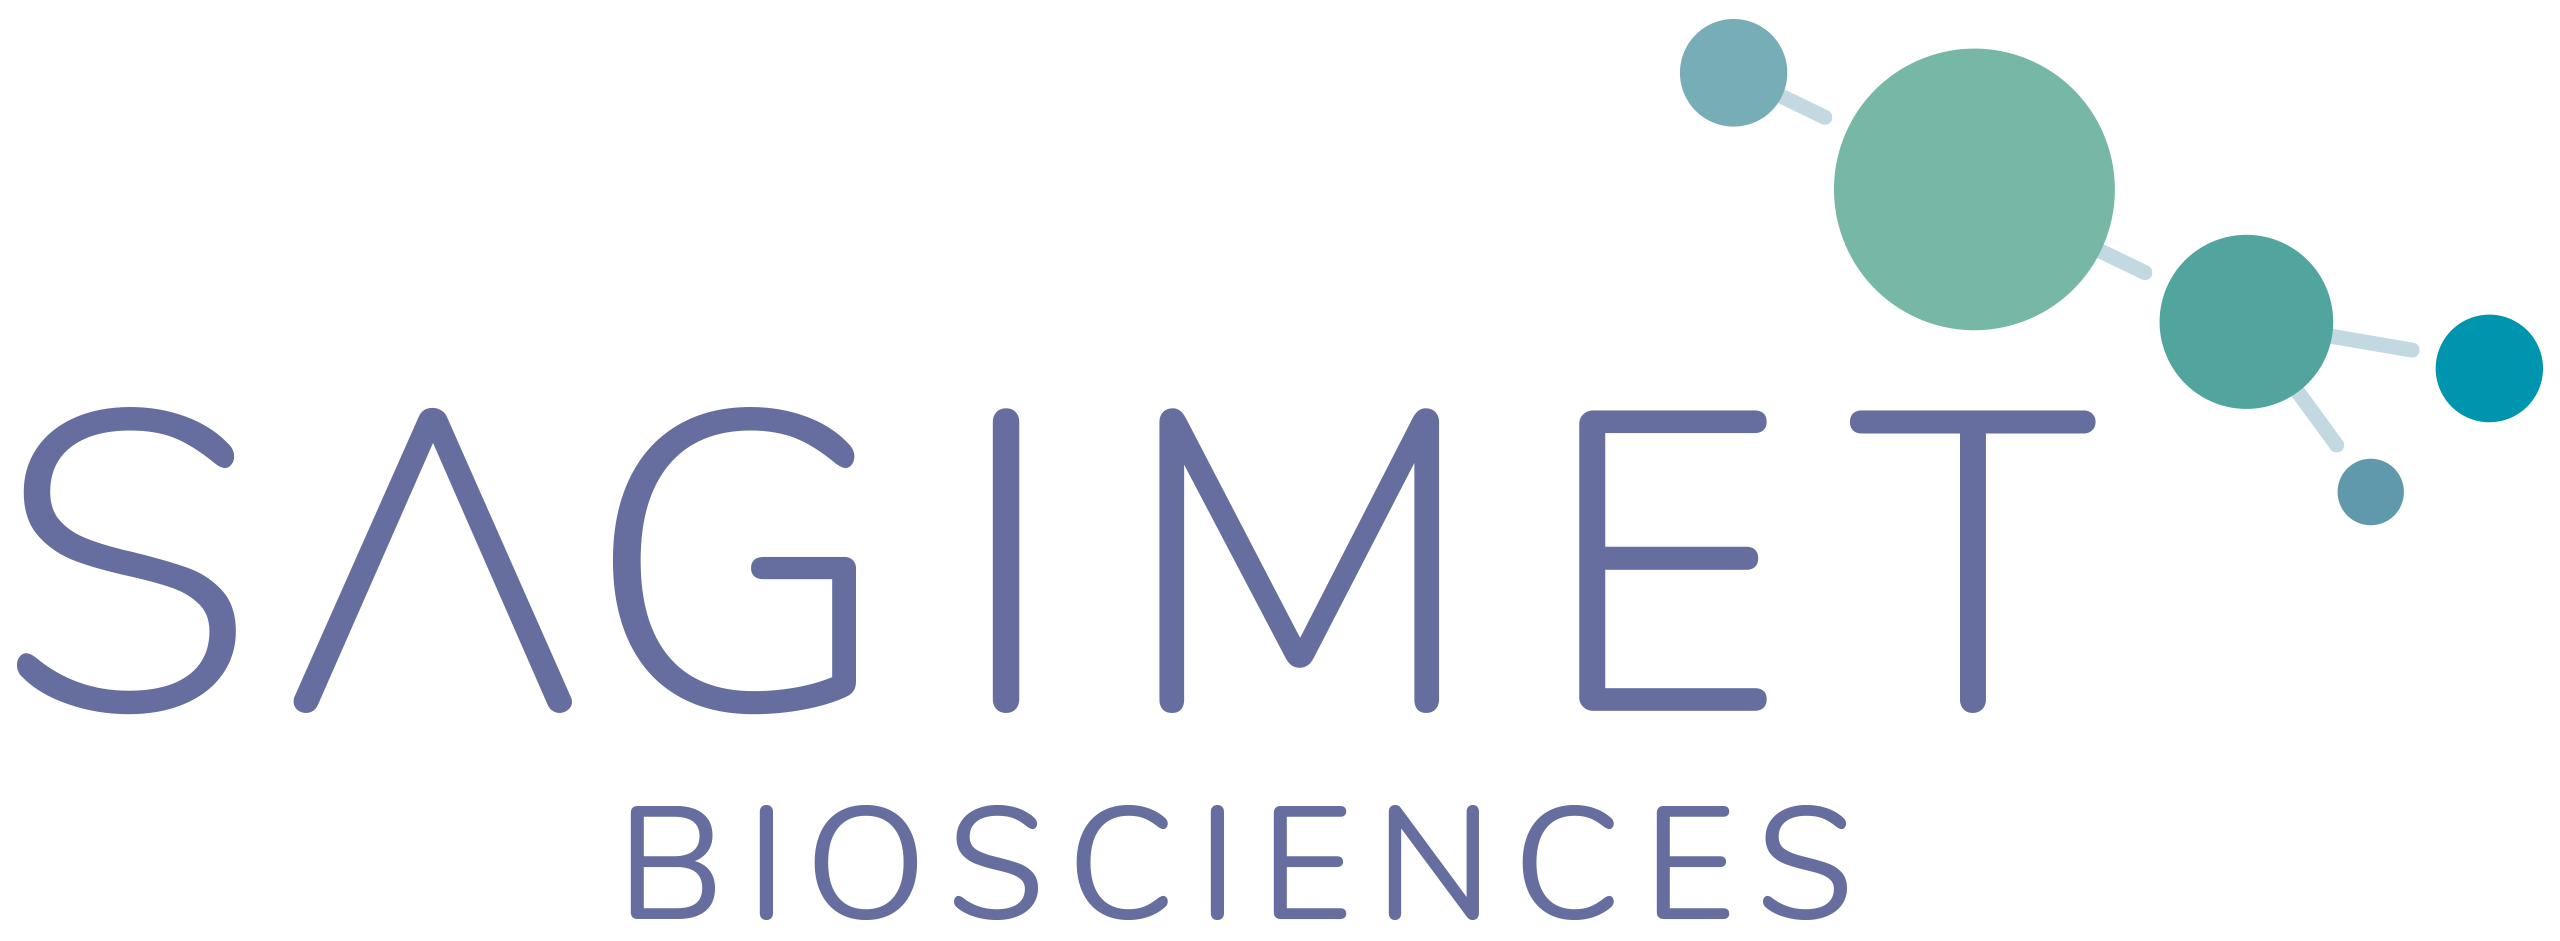 Sagimet-Logo-for-light-bg-FIN.png